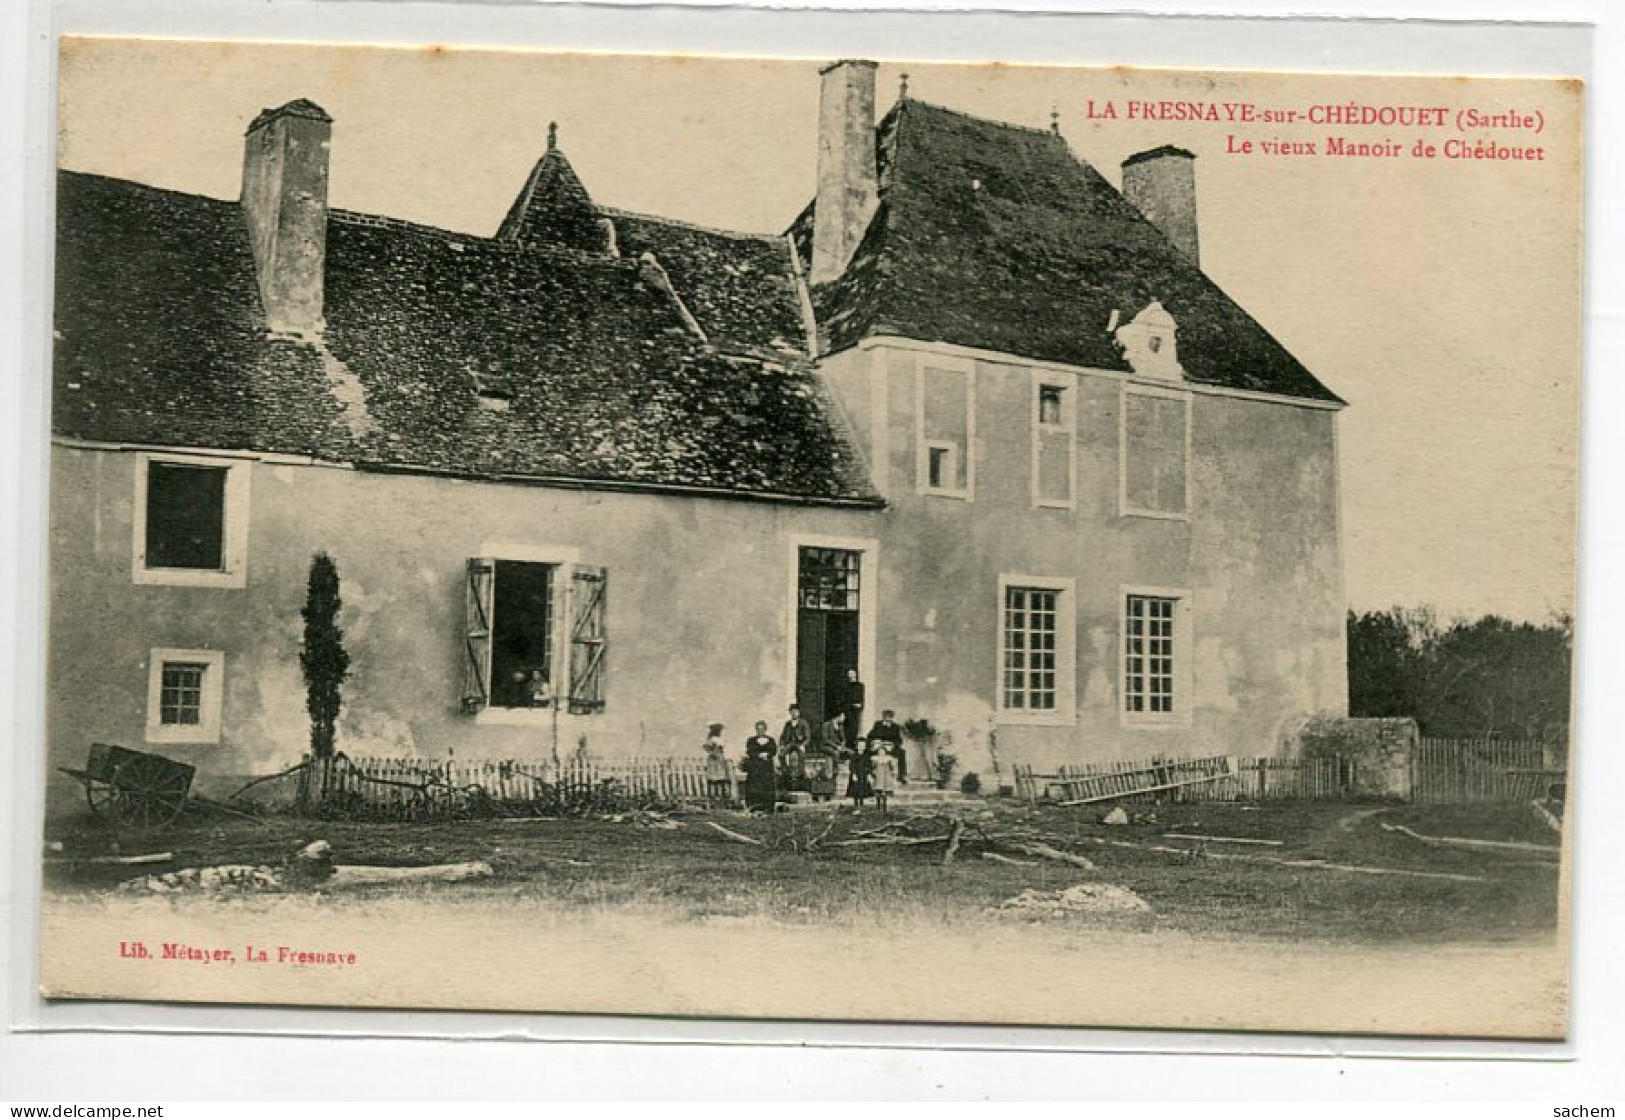 72 LA FRESNAYE Sur CHEDOUET  E Vieux Manoir De Chedouet Et Ses Habitants 1910 - Lib Métayer     D16  2019  - La Fresnaye Sur Chédouet